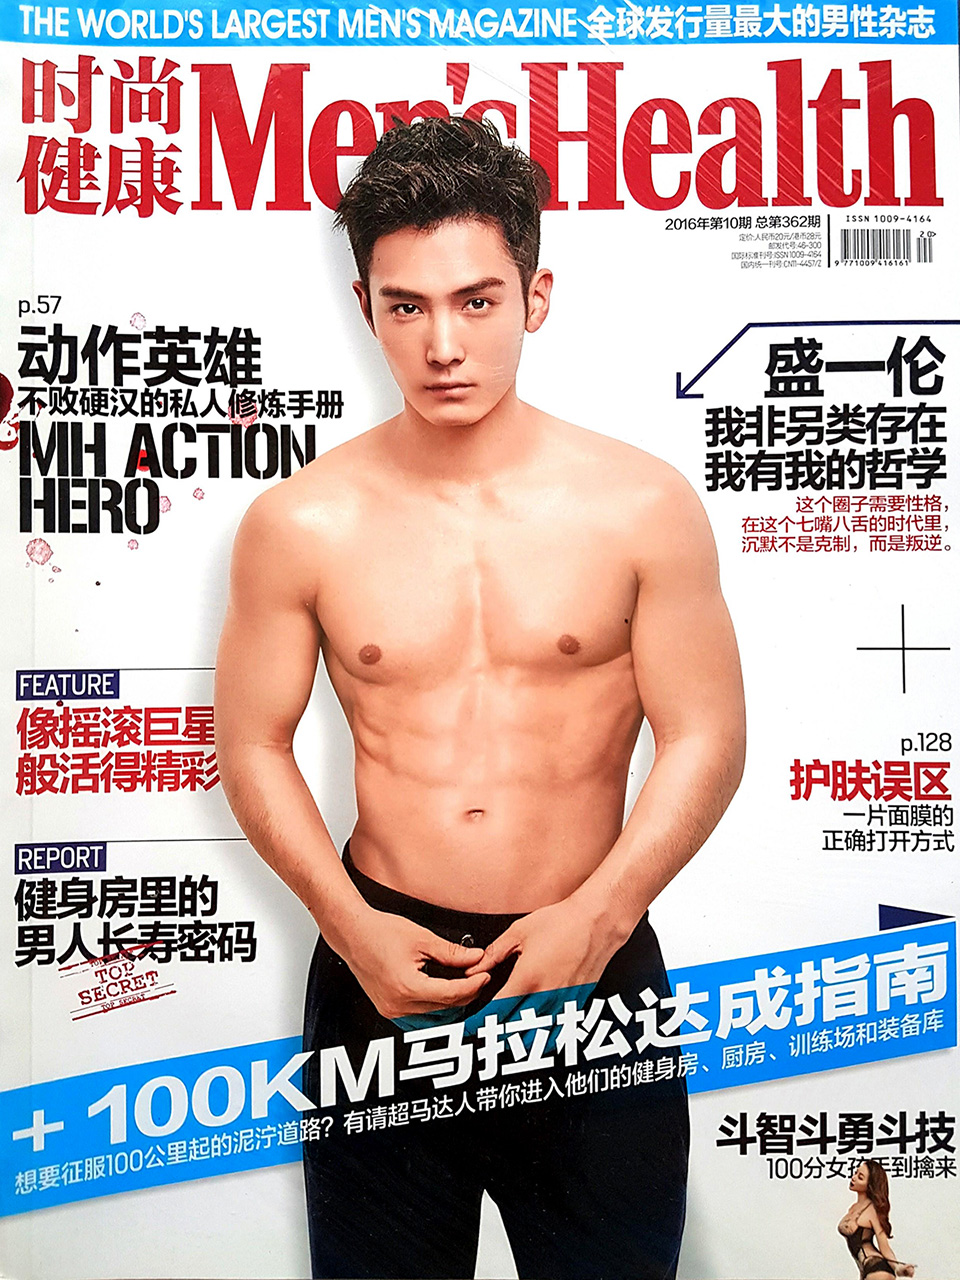 Kinesko izdanje časopisa Men's Health. 